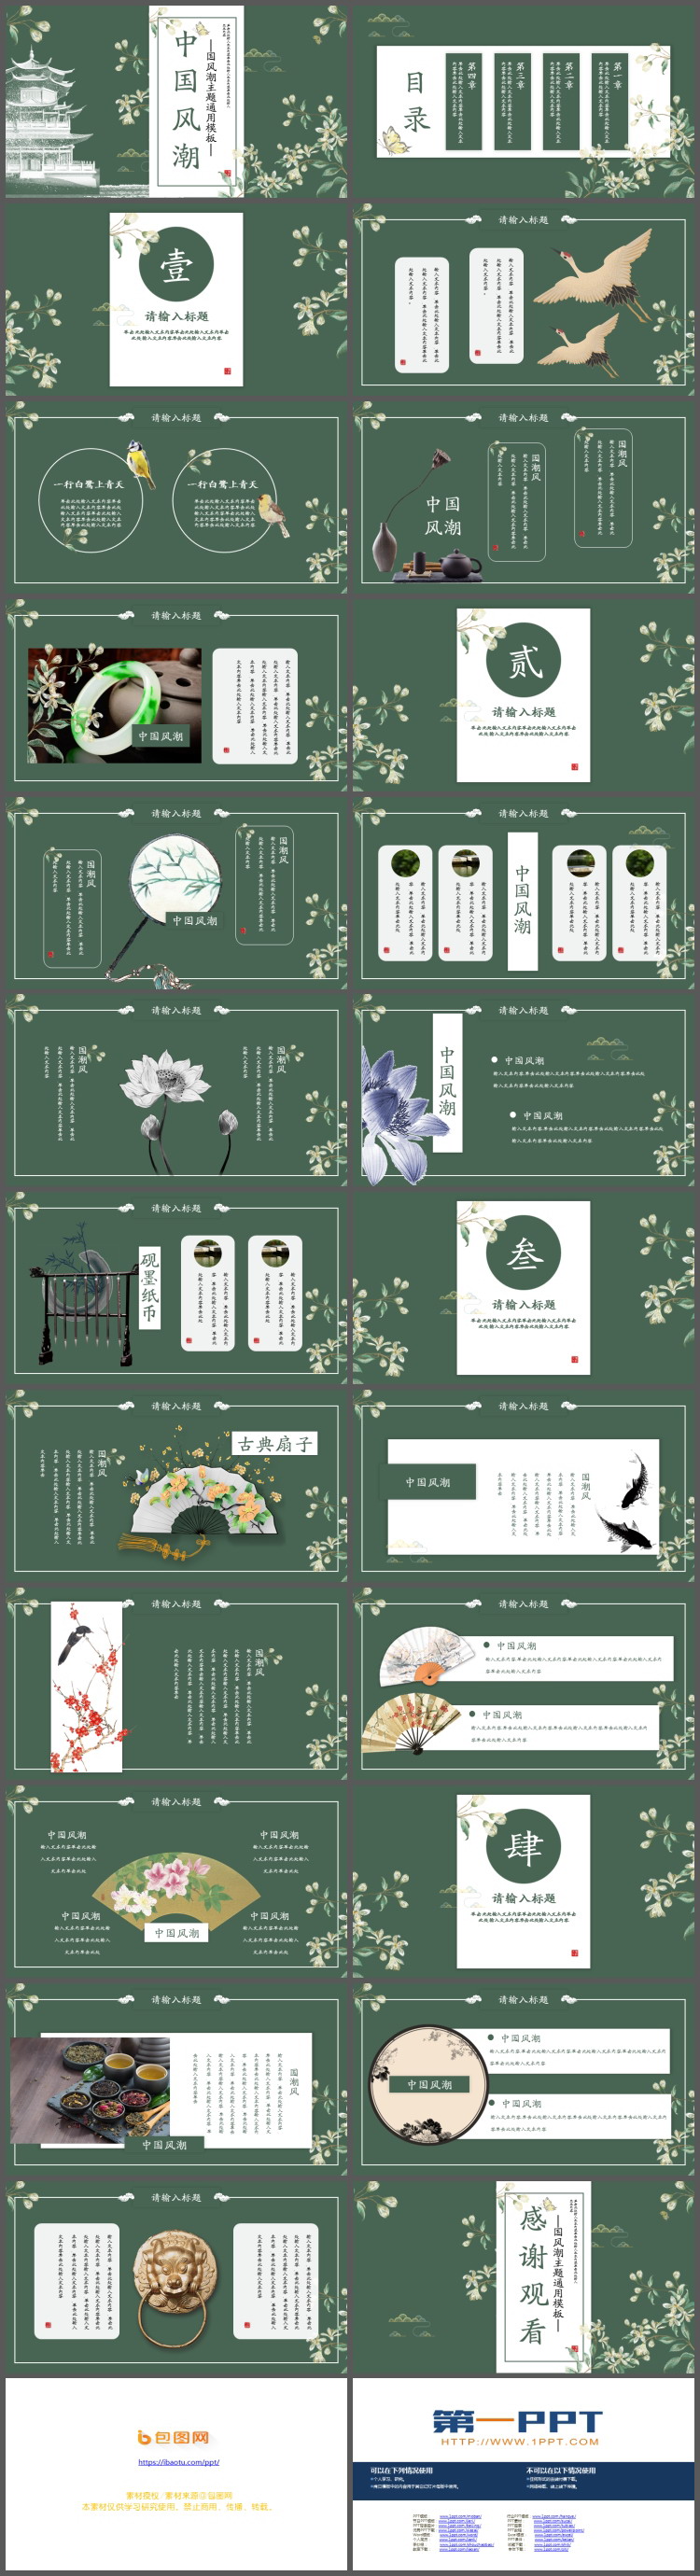 墨绿色花卉楼阁背景的中国风PPT模板免费下载